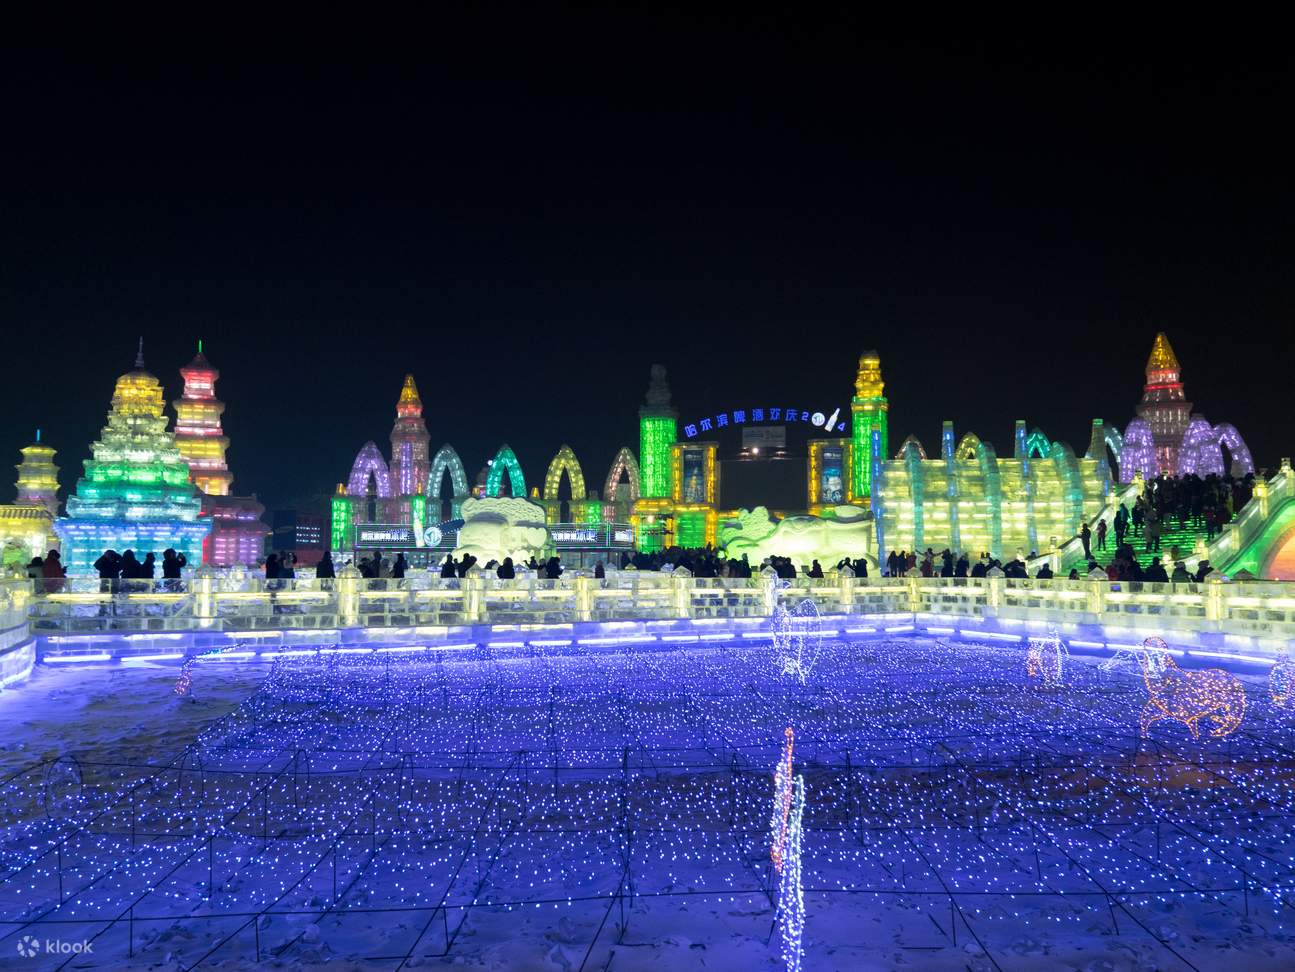 中国·哈尔滨冰雪大世界图片_百度百科